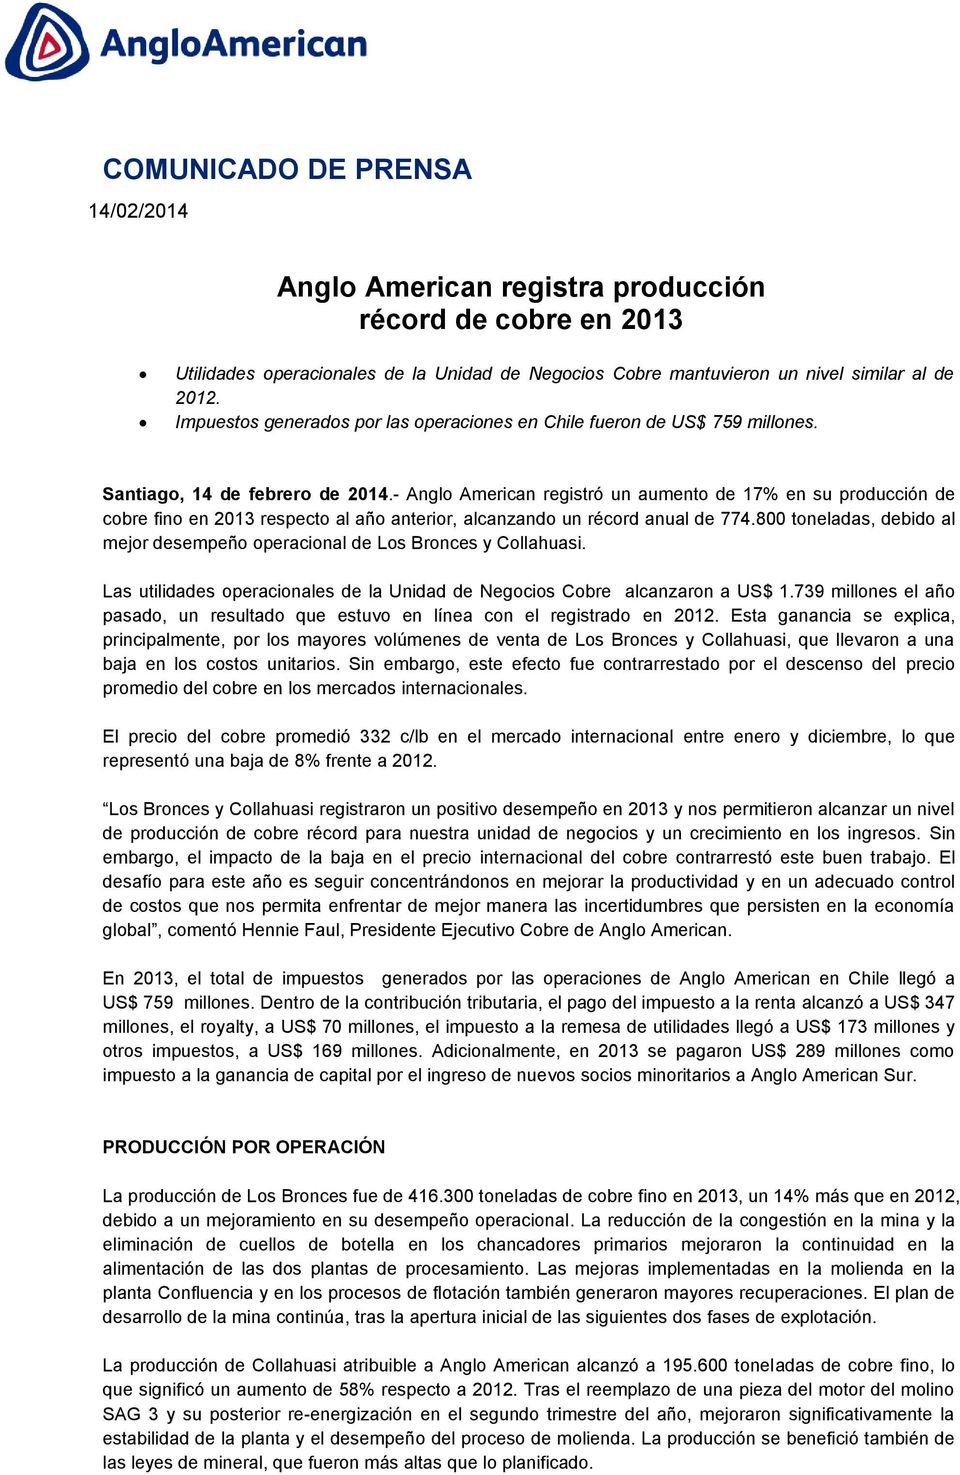 - Anglo American registró un aumento de 17% en su producción de cobre fino en 2013 respecto al año anterior, alcanzando un récord anual de 774.